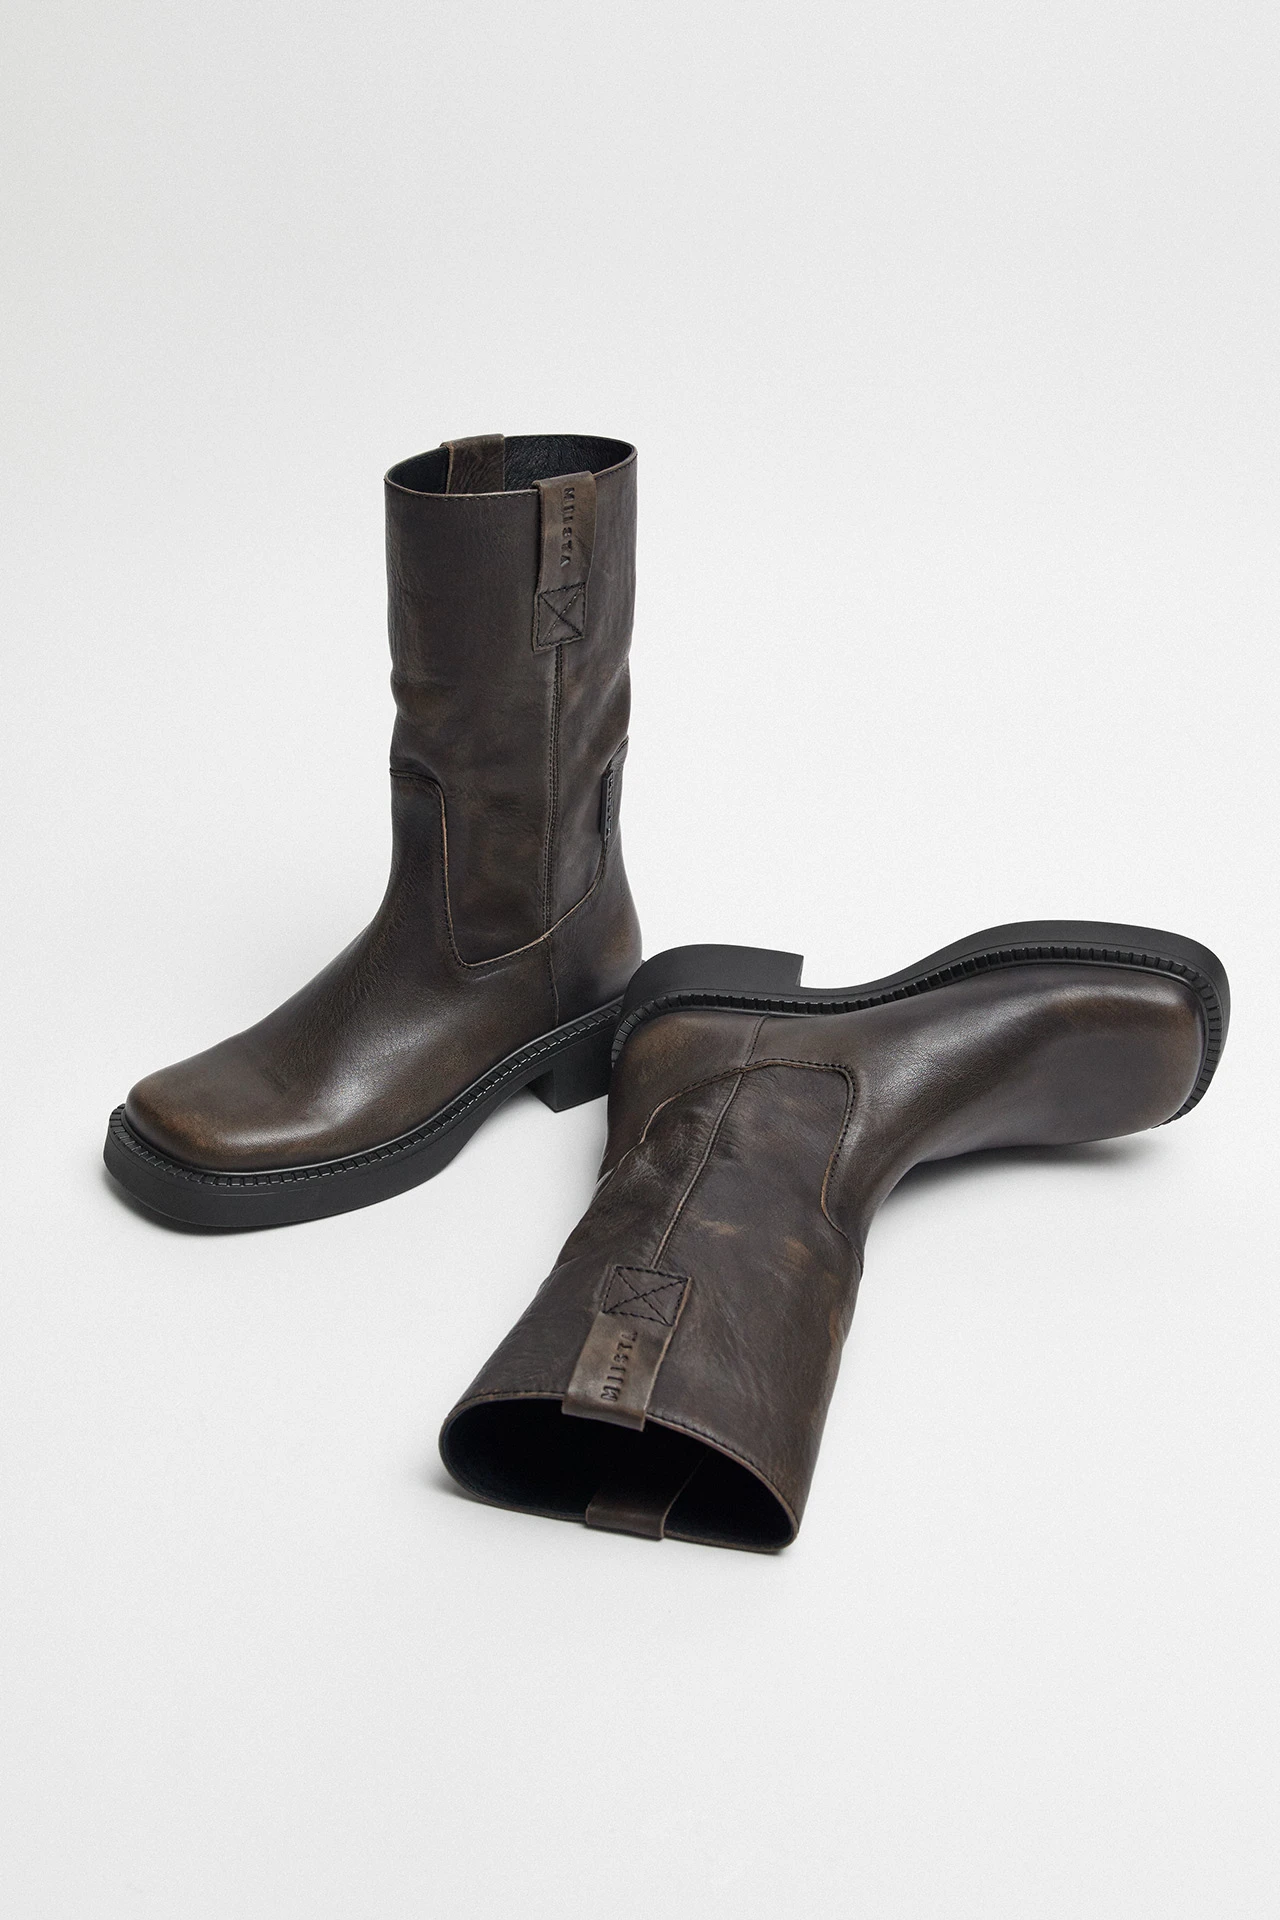 E8-aron-brown-boots-02